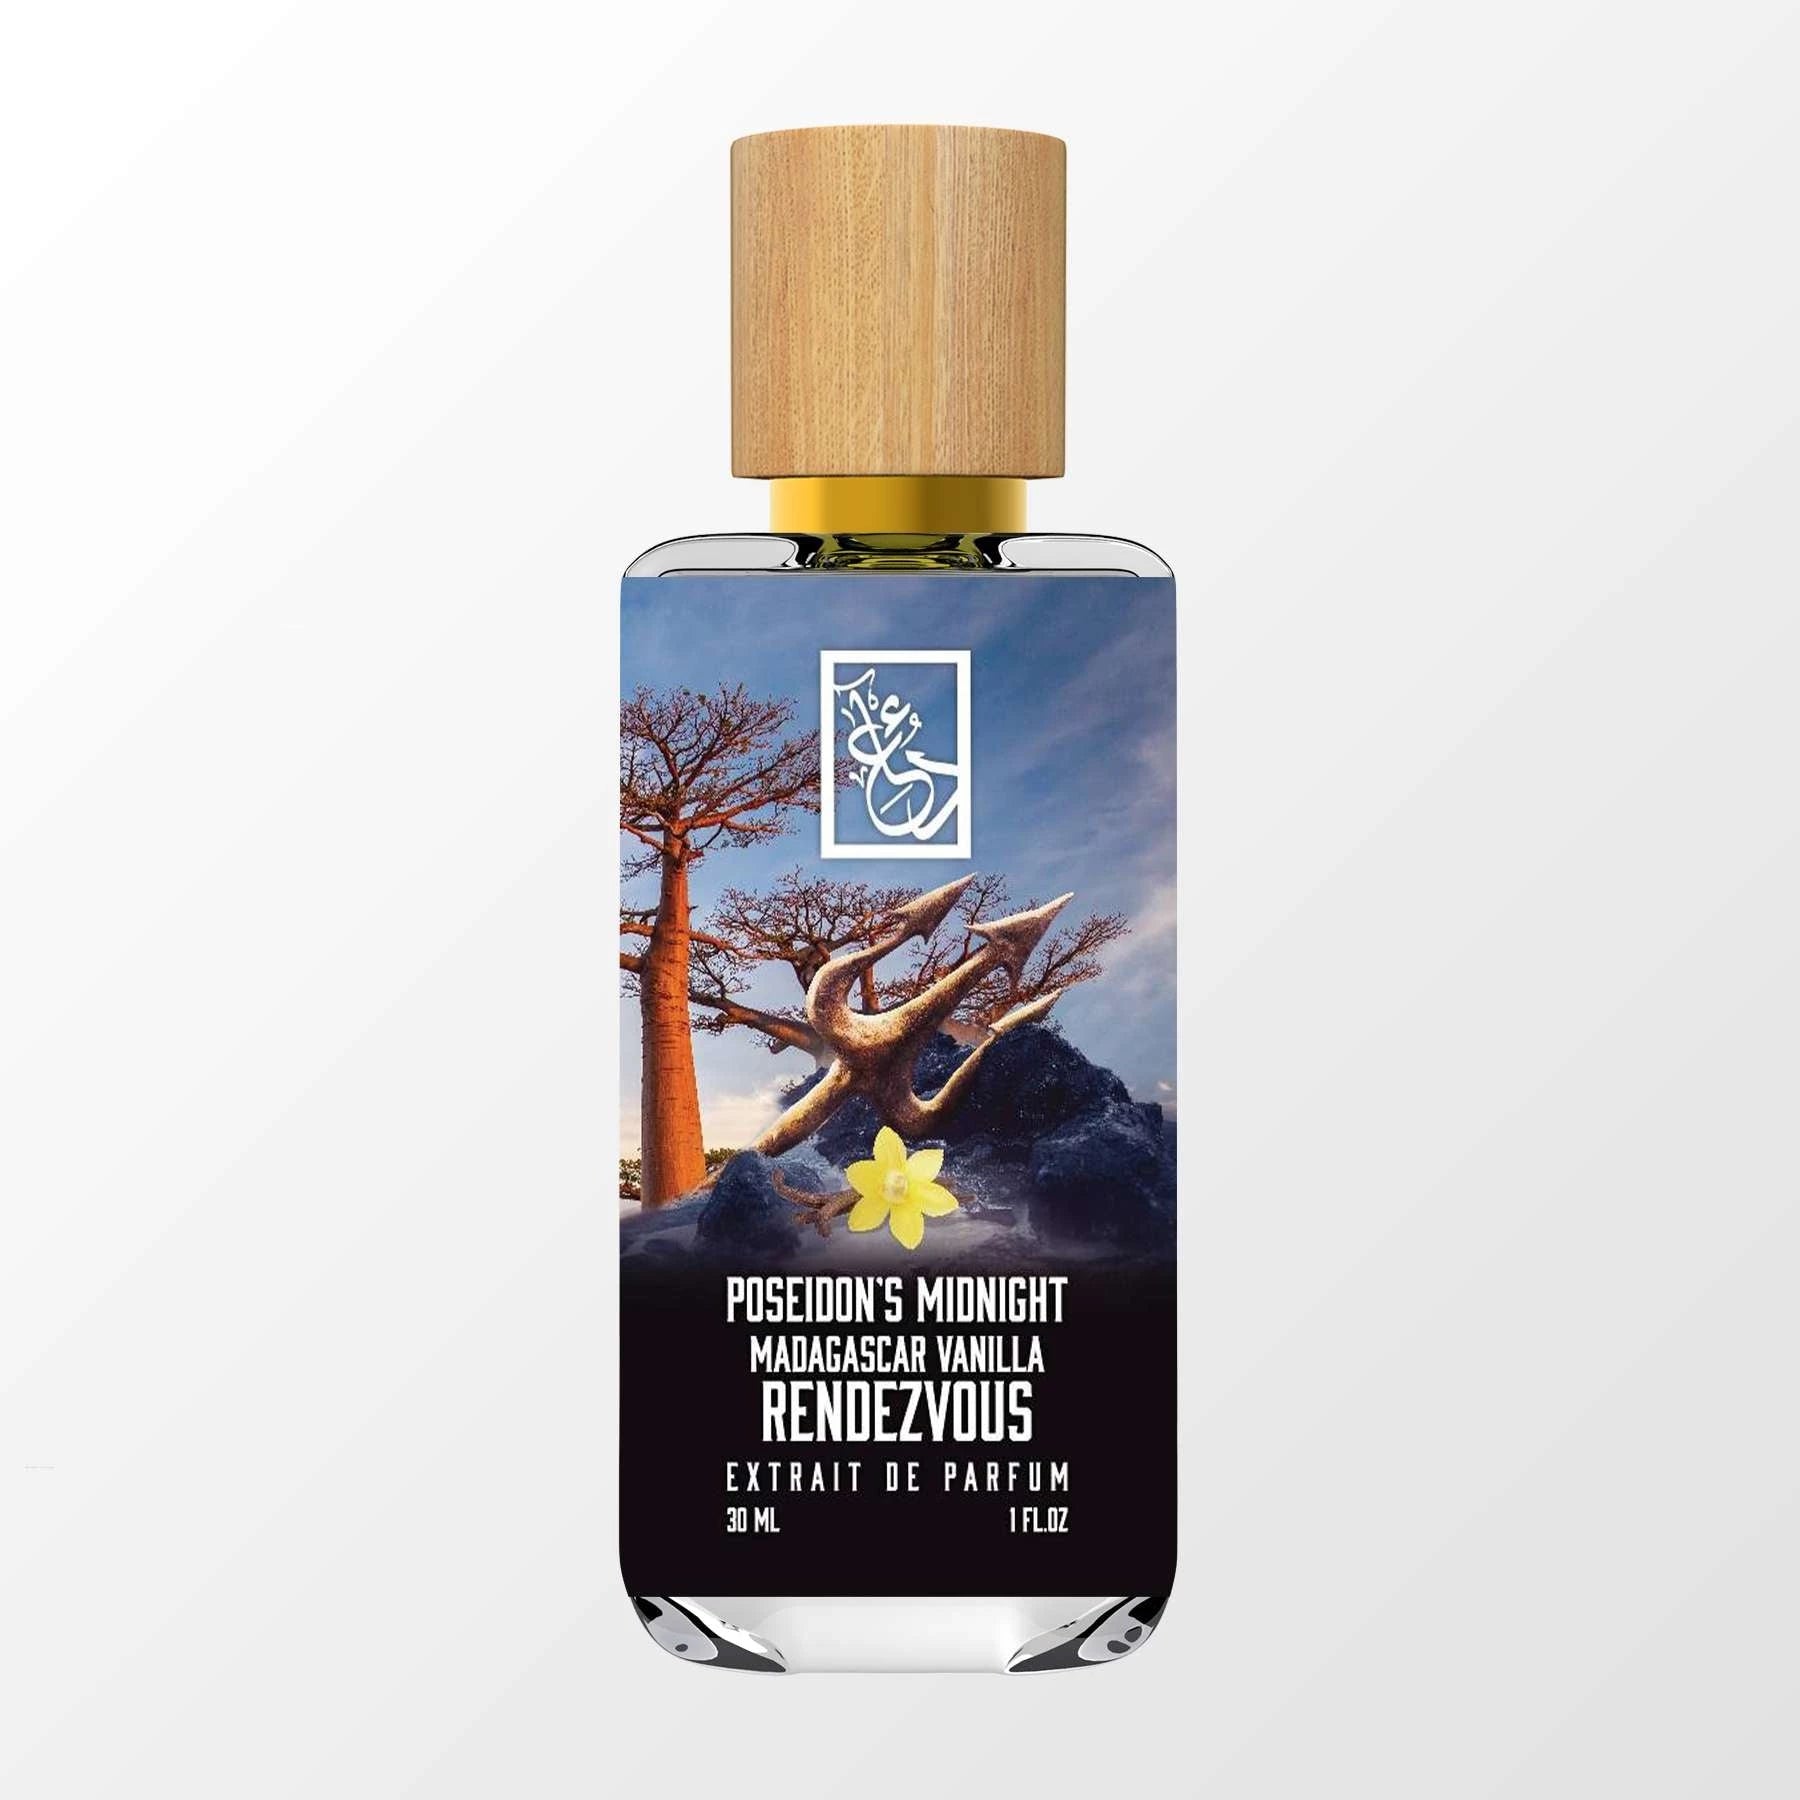 Nature's Oil Midnight Vanilla Fragrance Oil